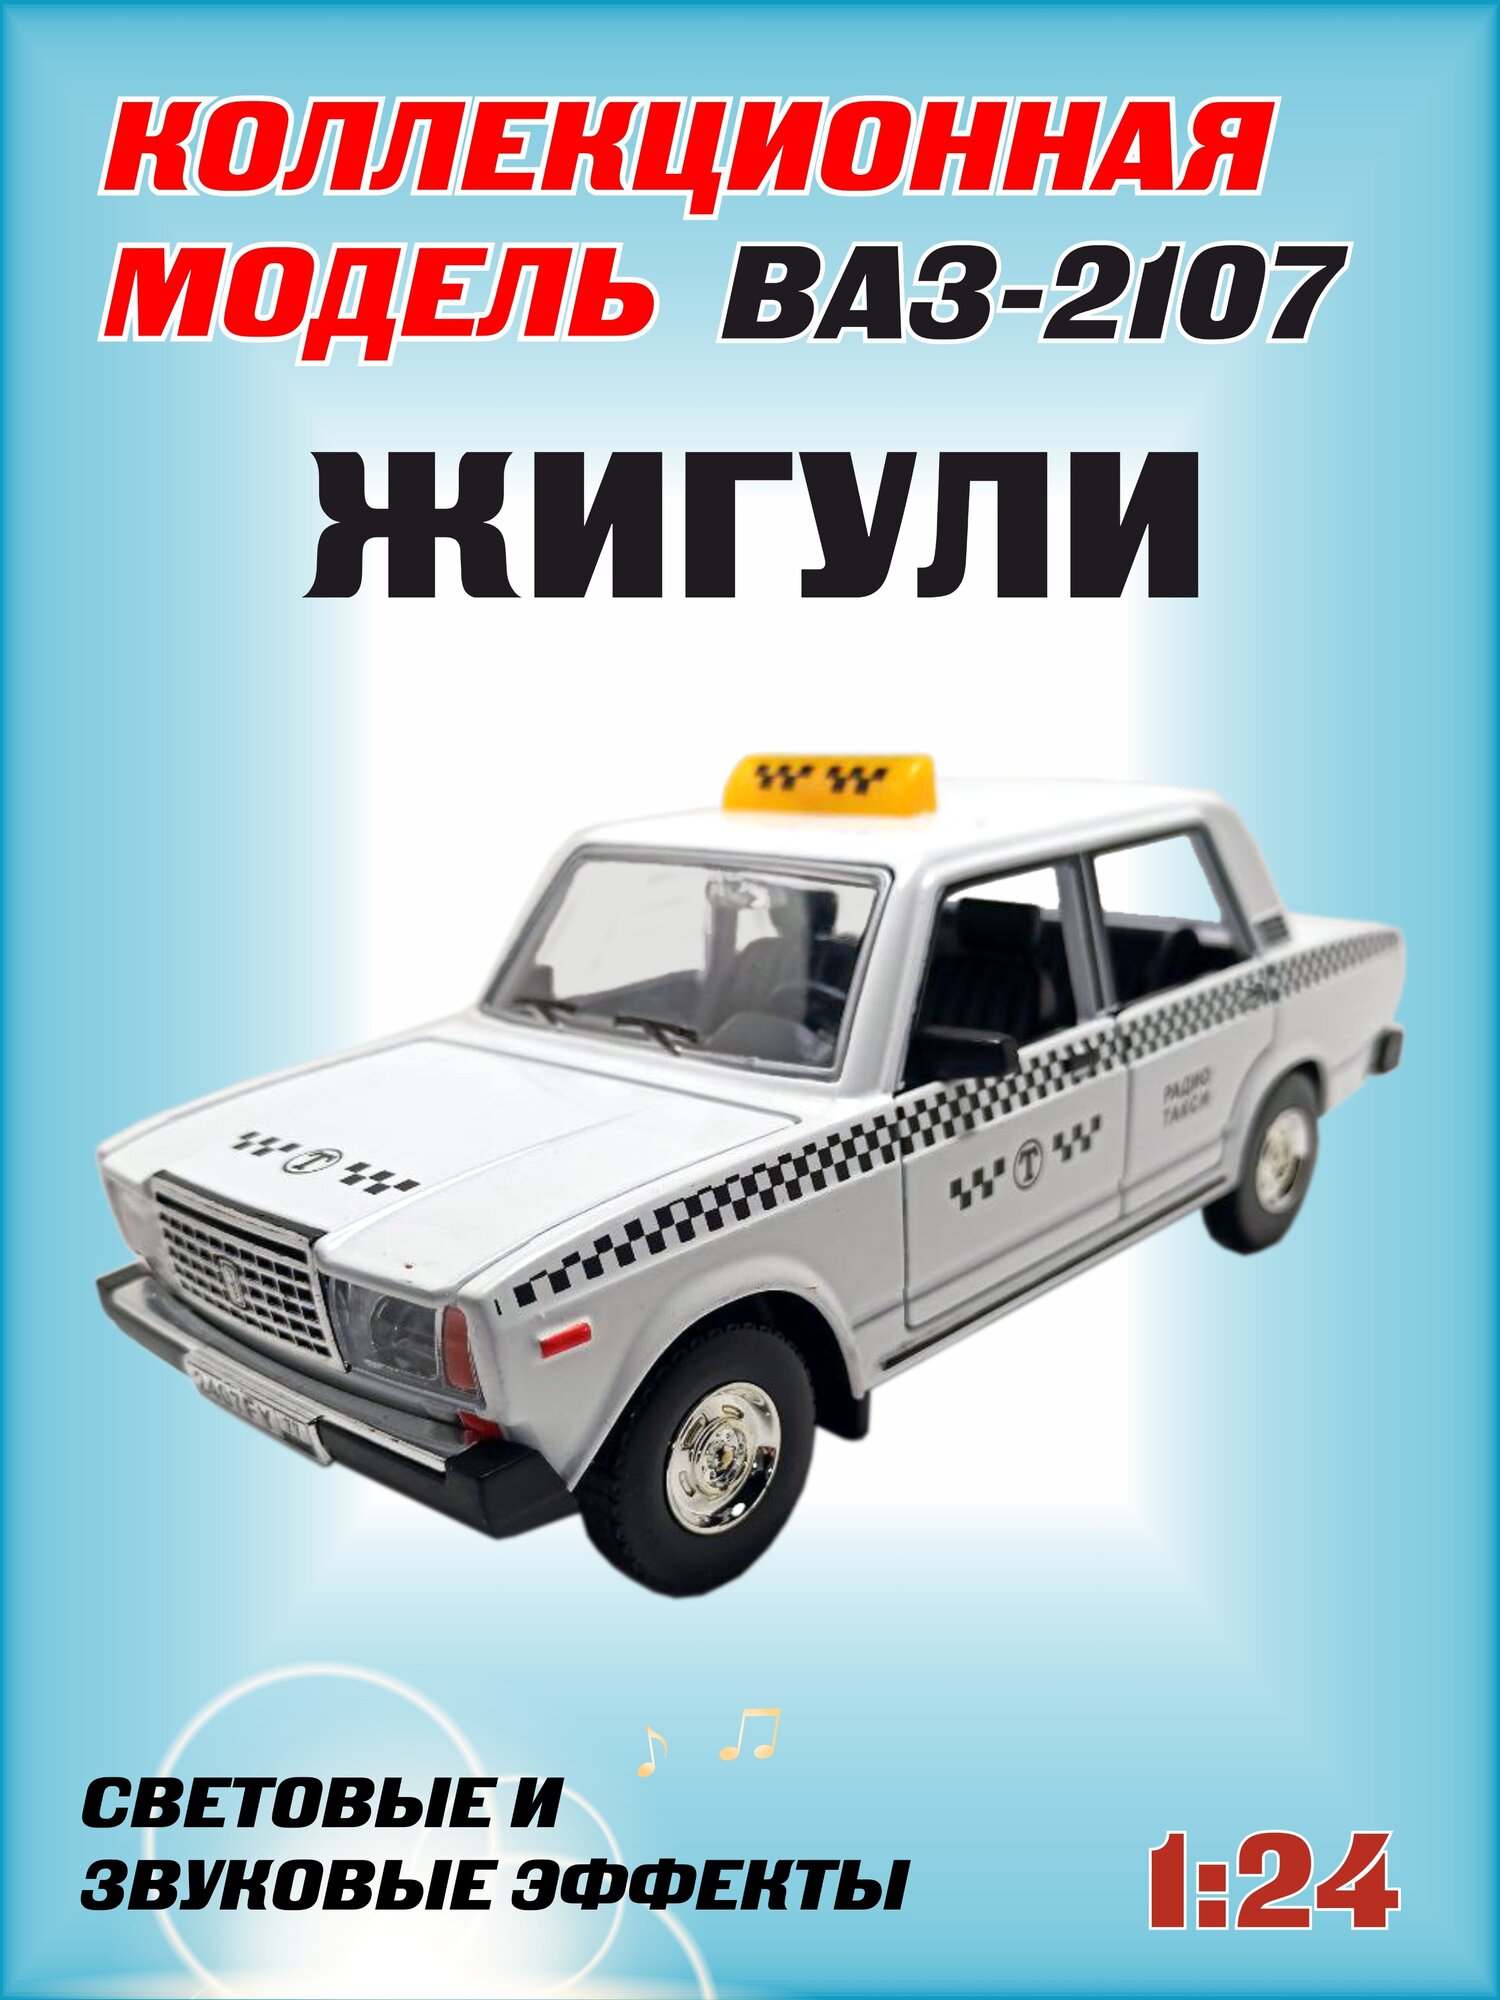 Коллекционная машинка игрушка металлическая Жигули ВАЗ 2107 для мальчиков масштабная модель 1:24 такси белая